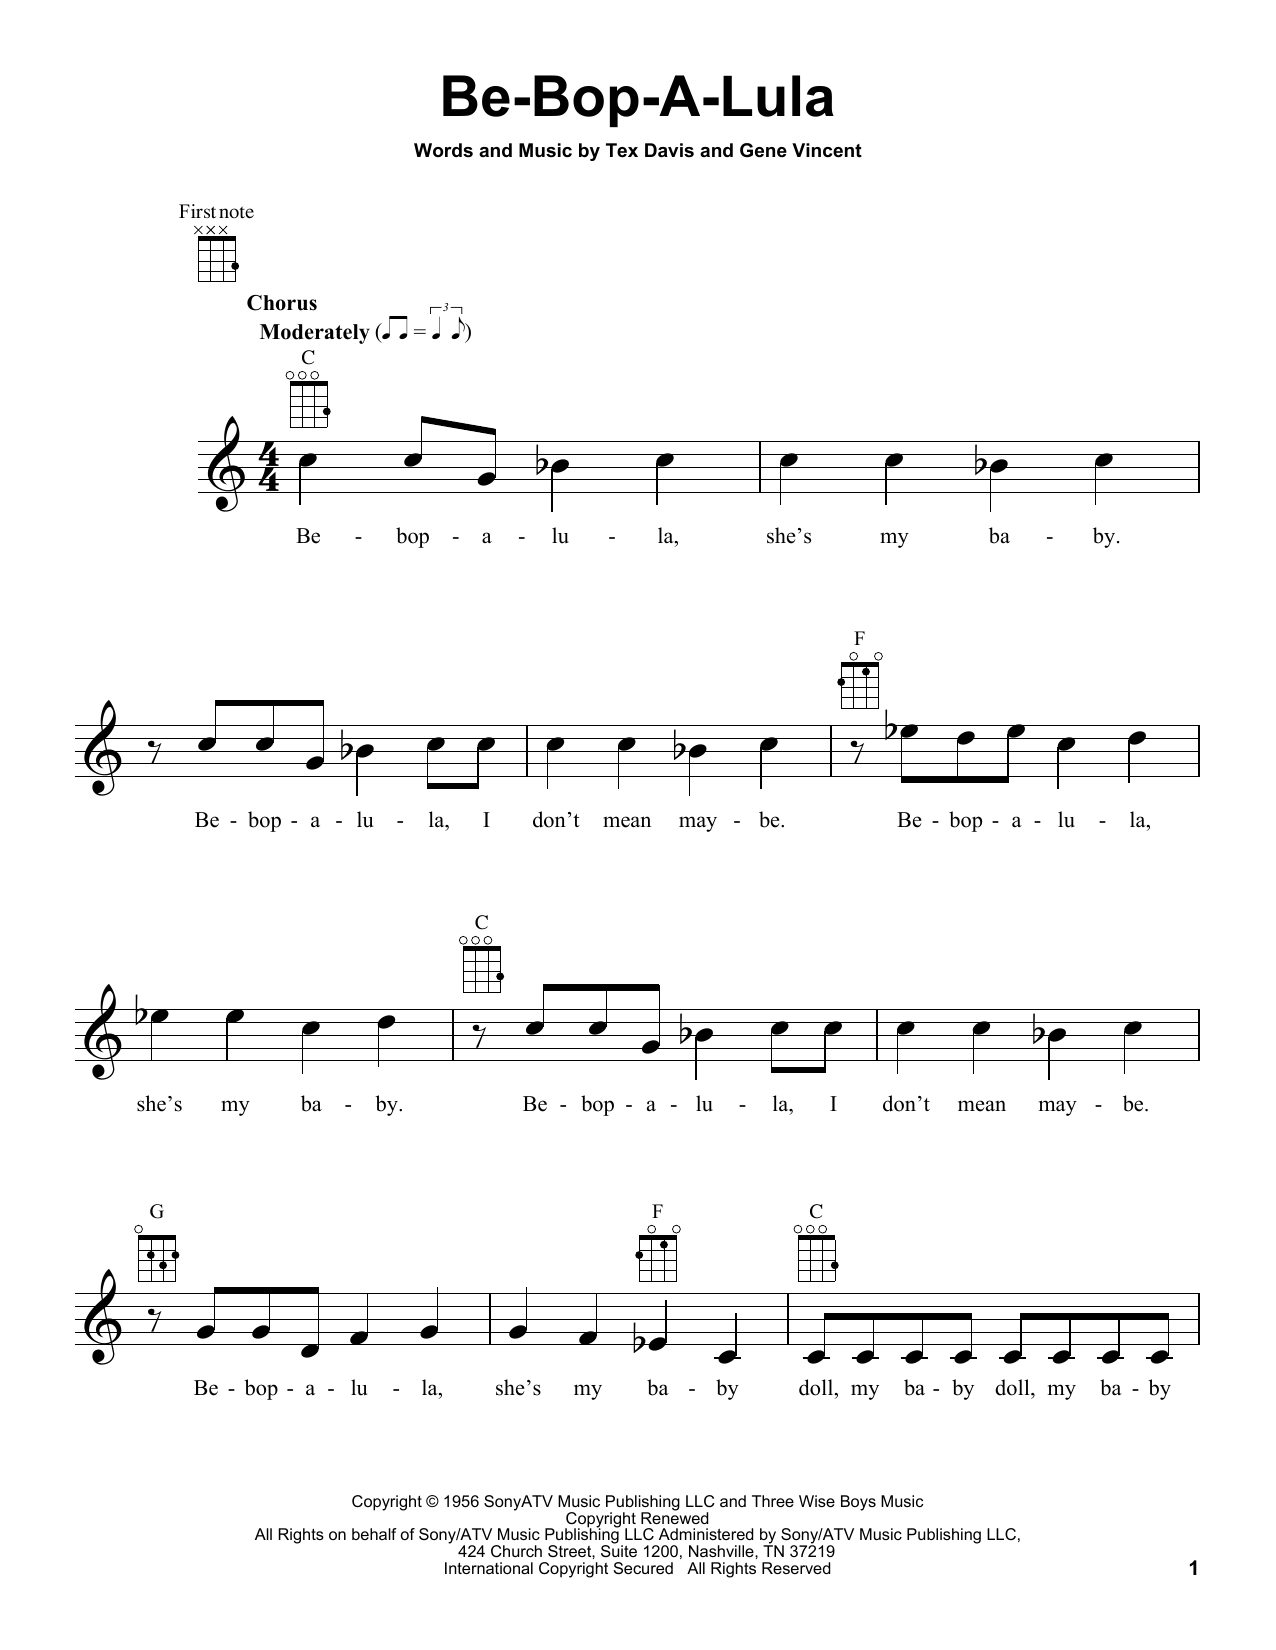 Gene Vincent & Tex Davis Be-Bop-A-Lula Sheet Music Notes & Chords for Ukulele - Download or Print PDF